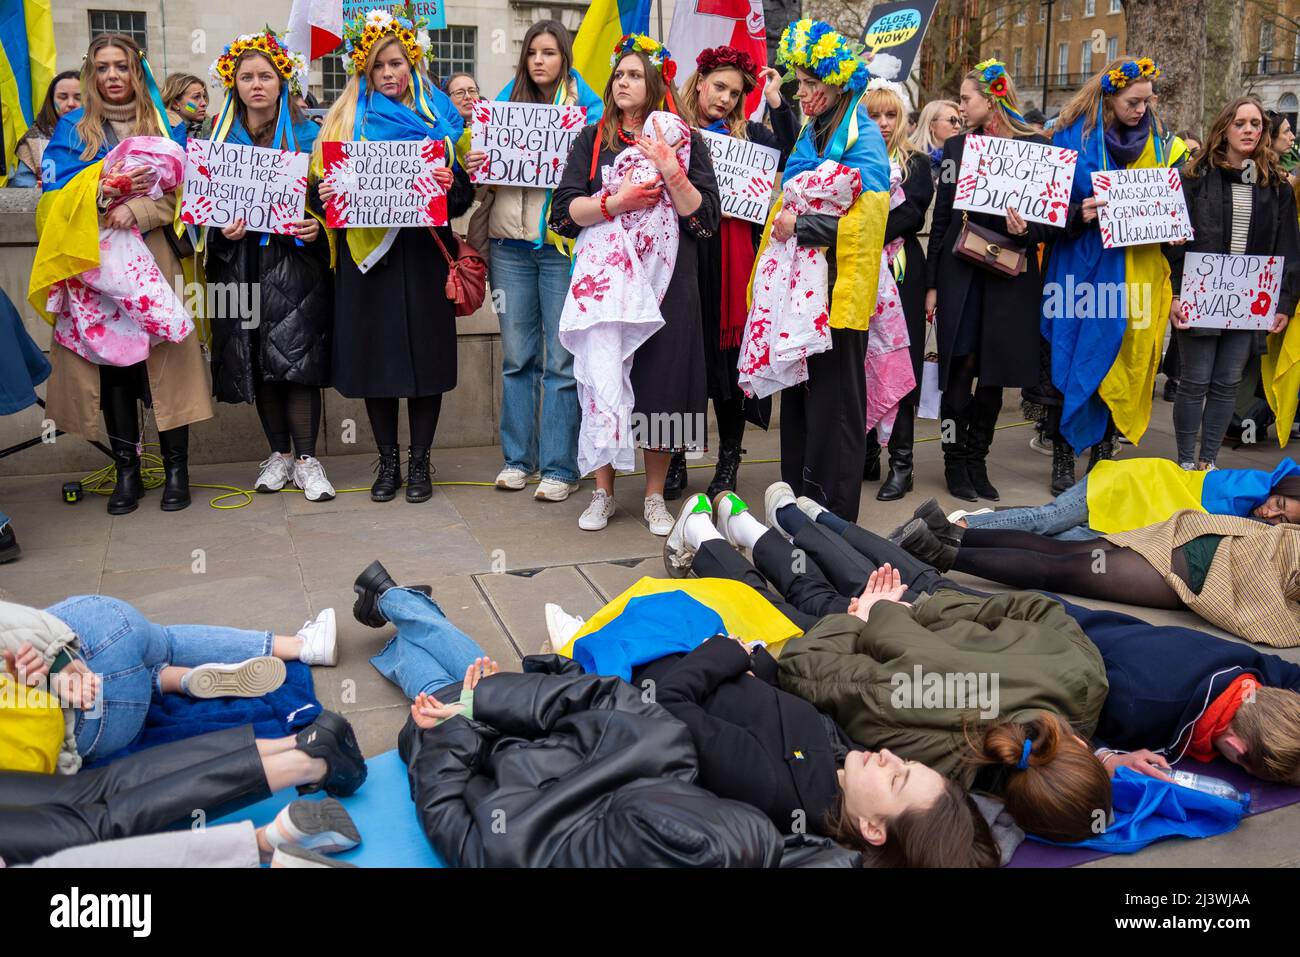 Des manifestants qui mènent une mort-dans, faisant référence aux civils ukrainiens tués dans des villes comme Bucha pendant la guerre avec la Russie. Femmes avec des bébés sanglants Banque D'Images